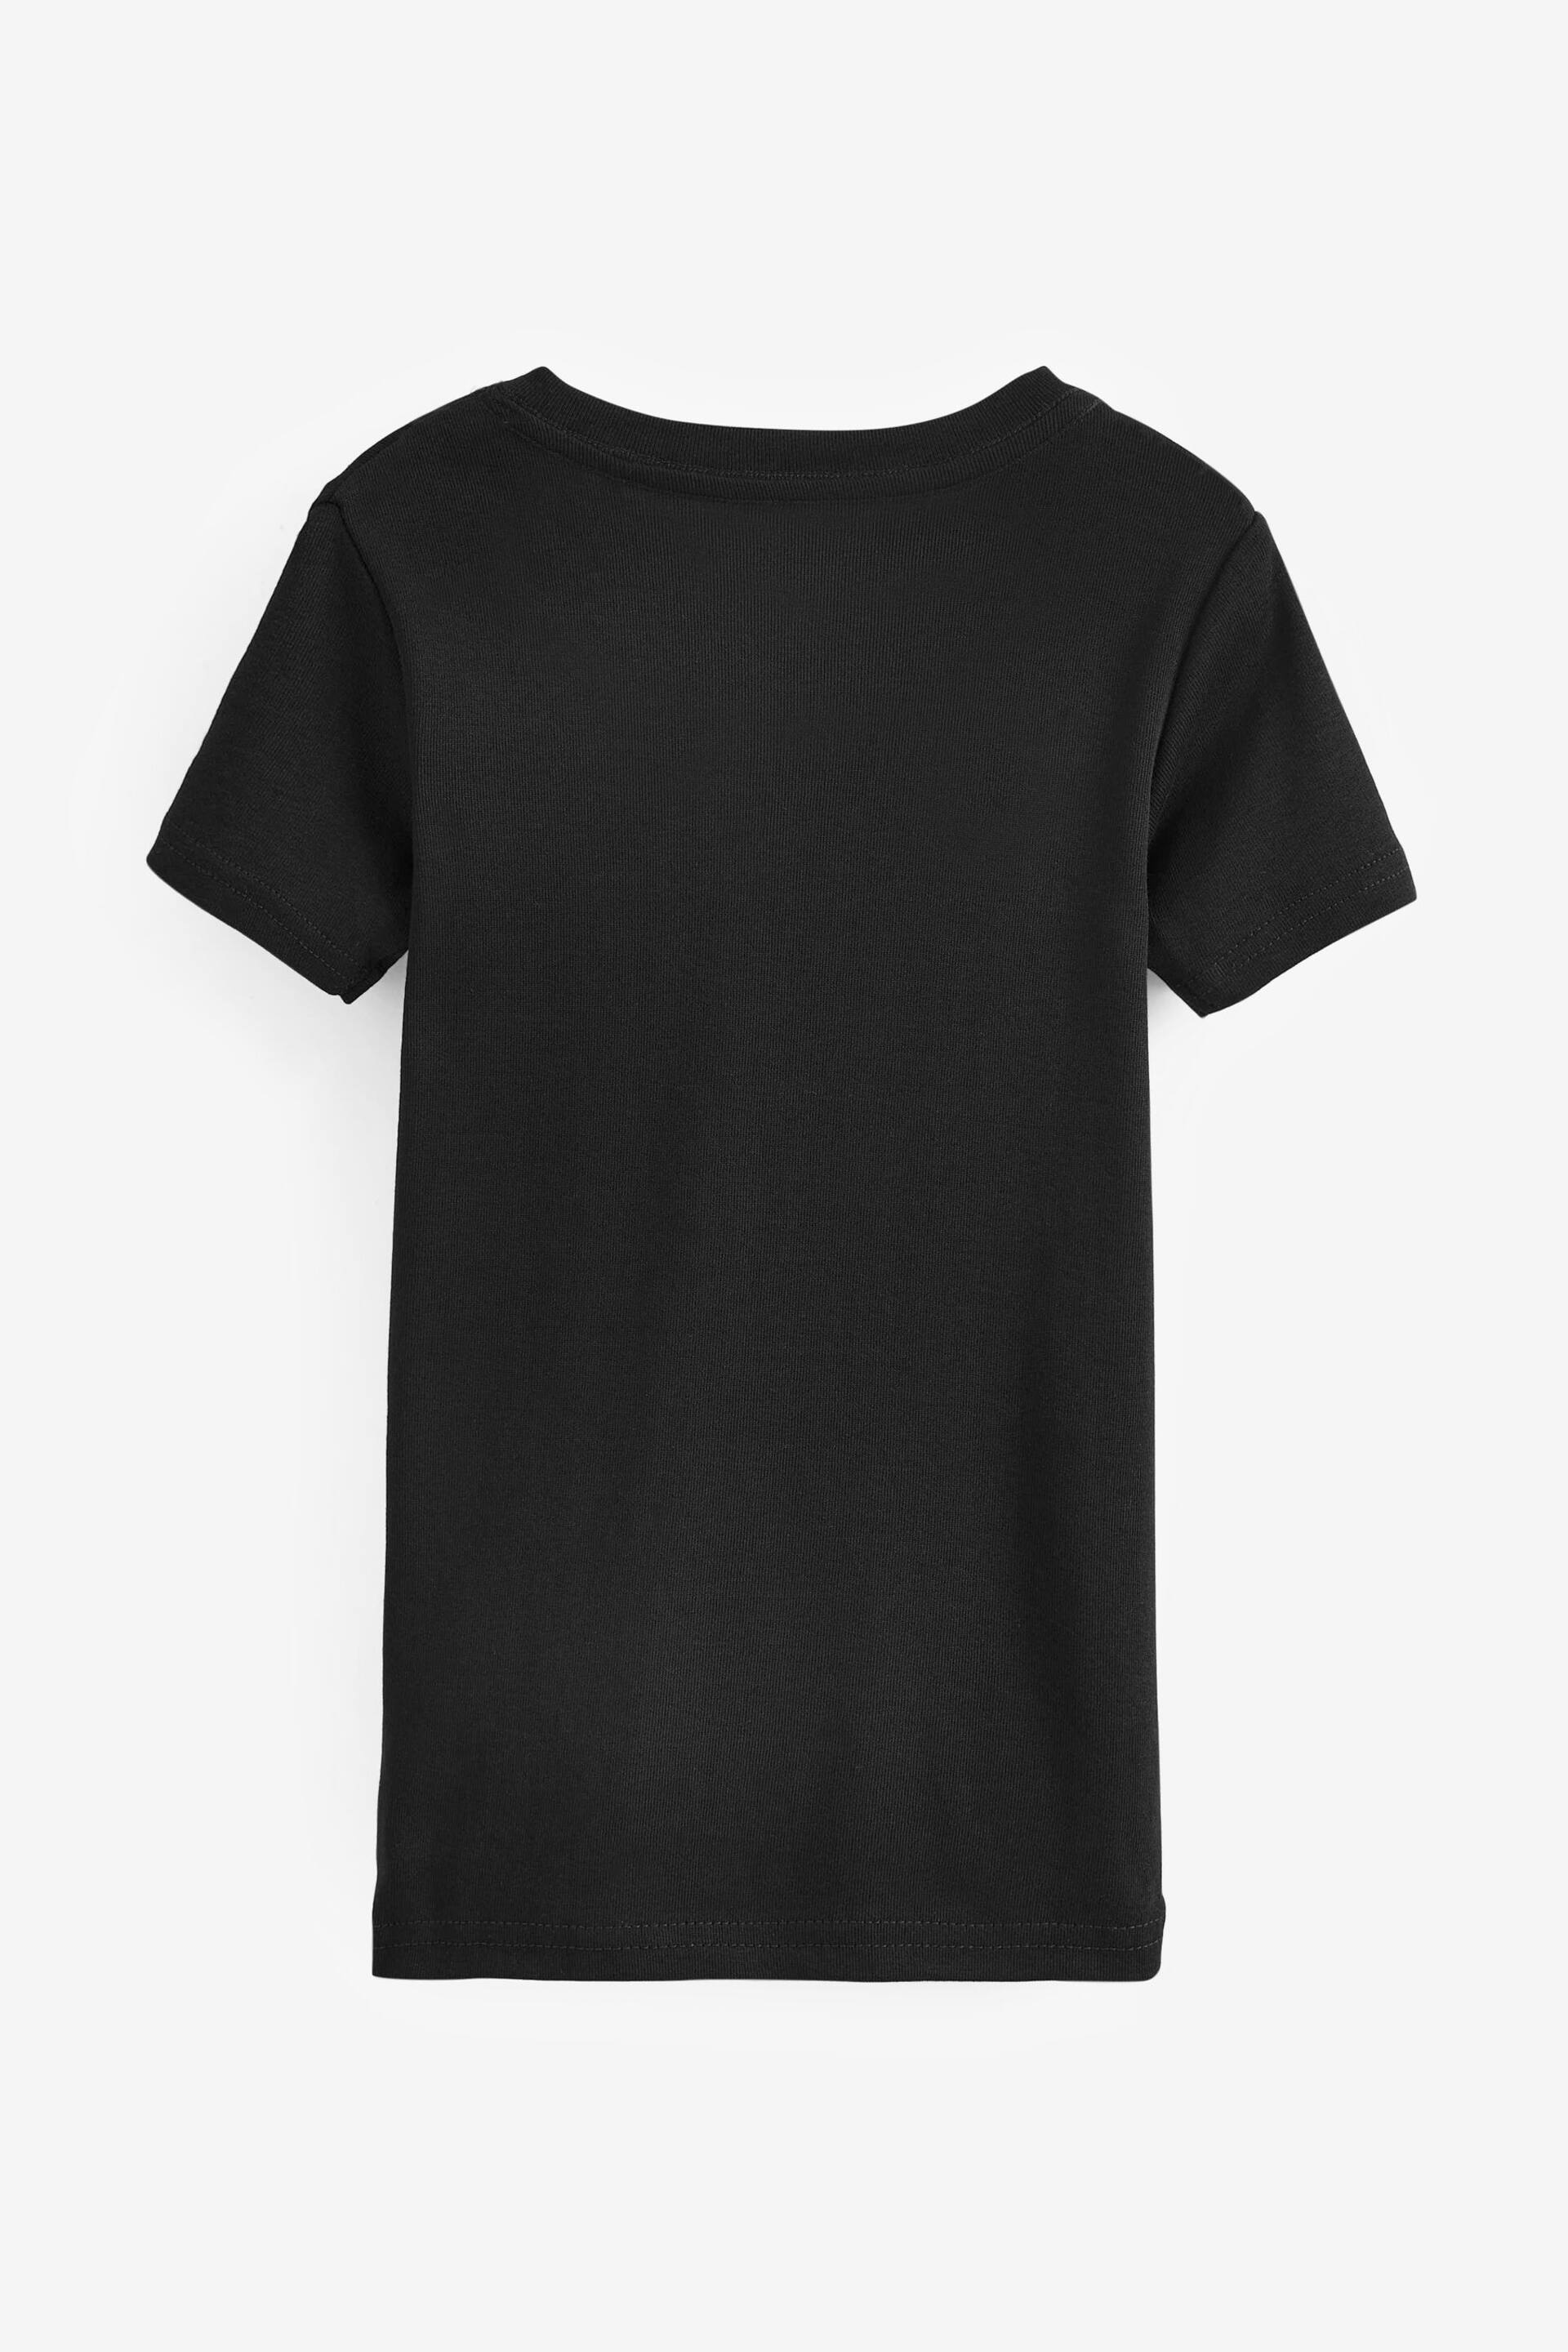 Black Short Sleeve Vest 3 Pack (1.5-16yrs) - Image 2 of 3